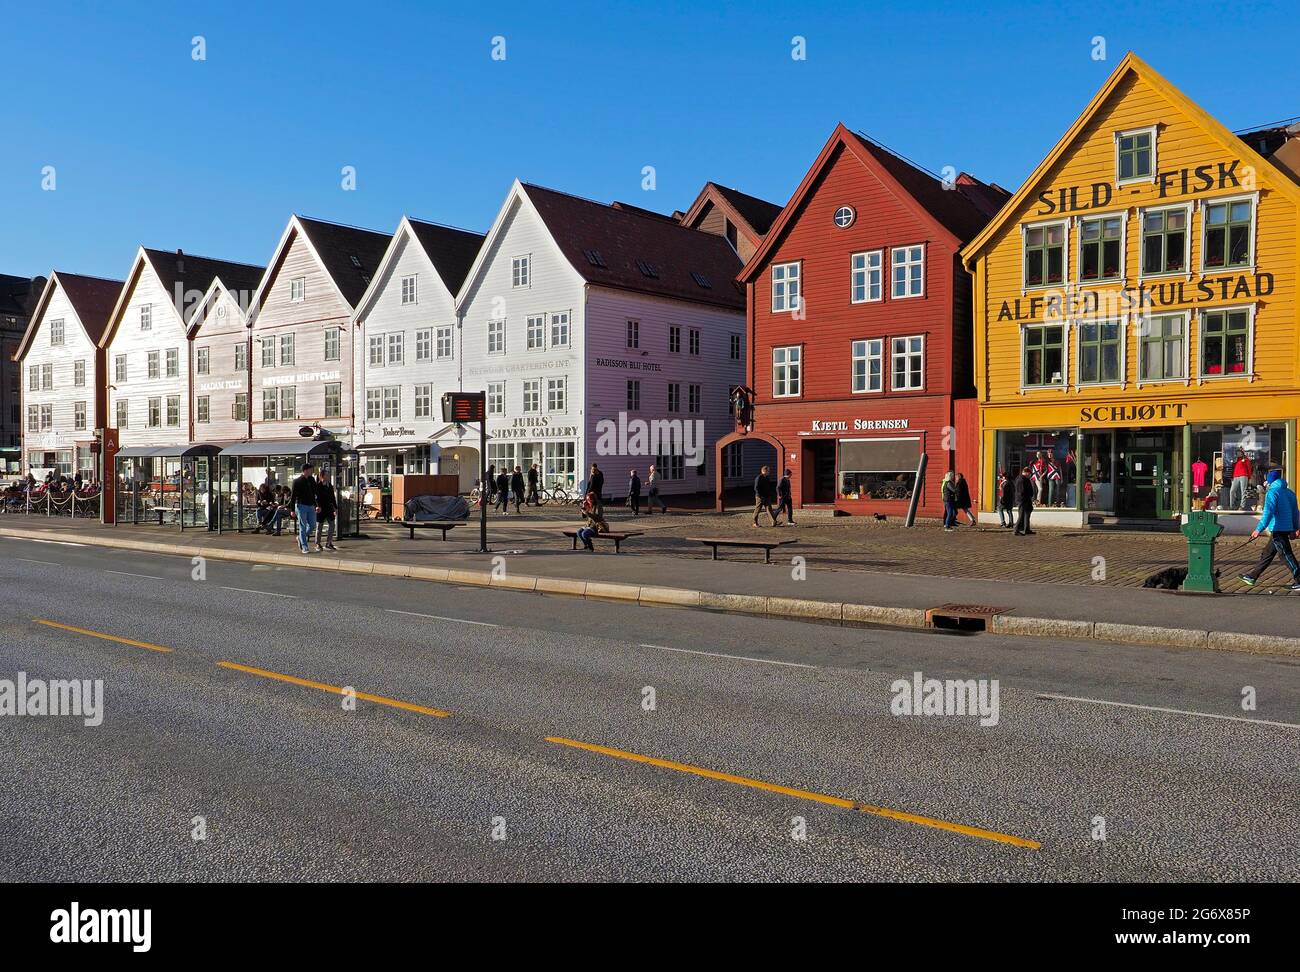 Bryggen, connu sous le nom de Tyskebryggen, est une série de bâtiments commerciaux historiques hanséatiques colorés qui bordent la partie est du port de Vågen Banque D'Images